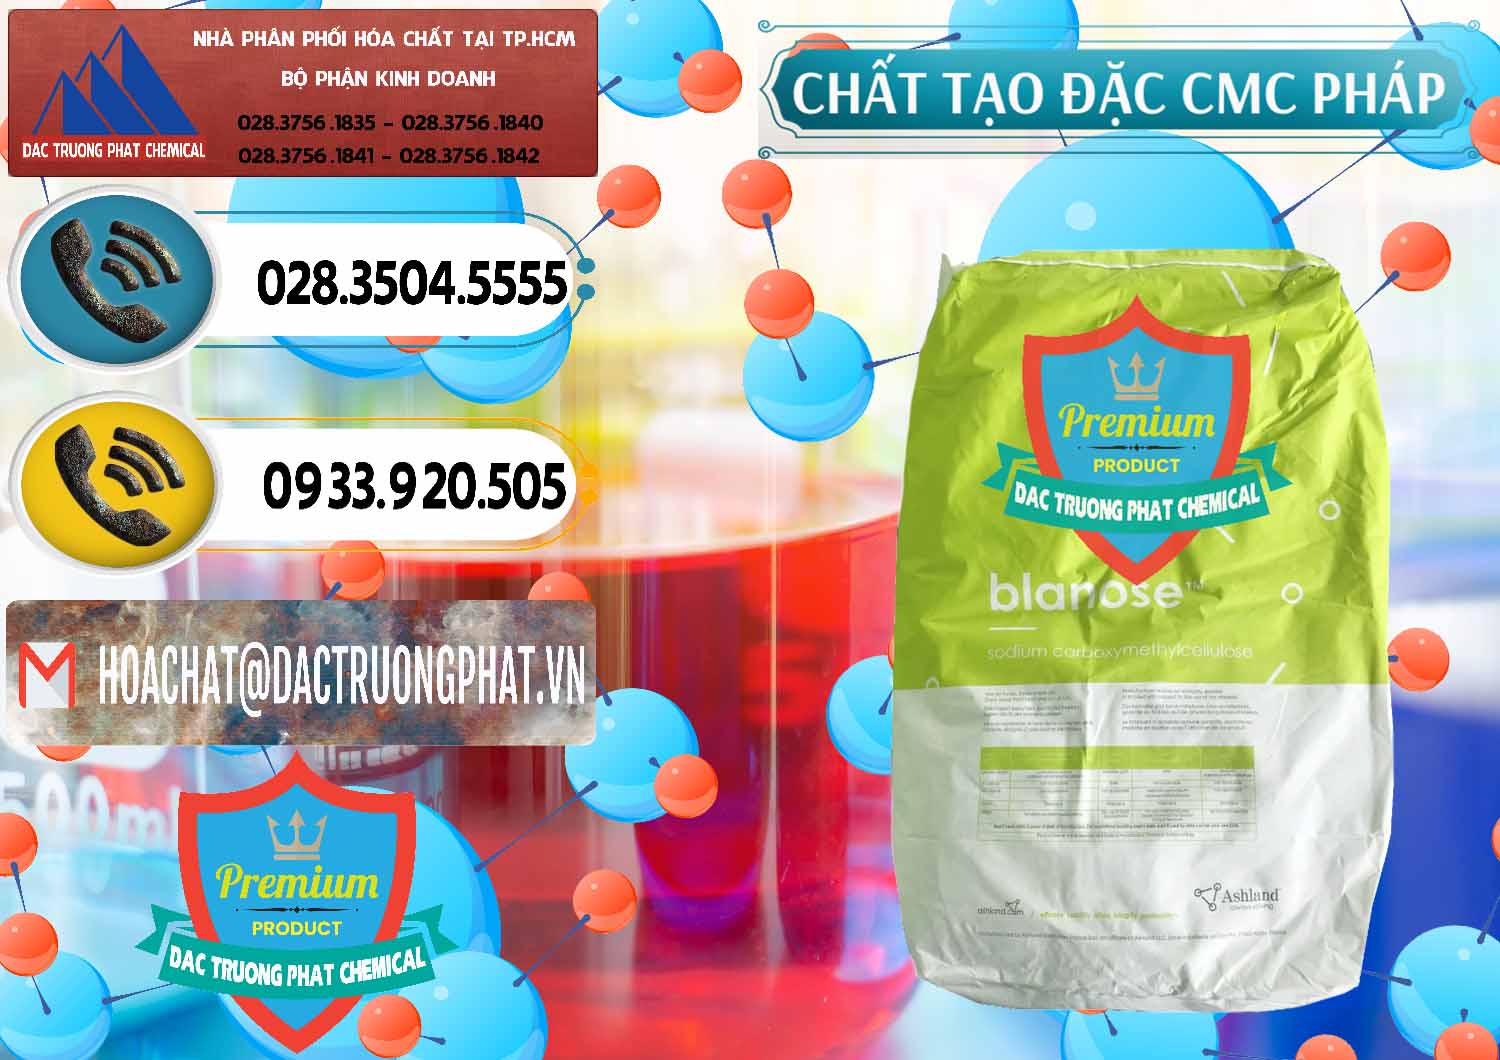 Nơi kinh doanh - bán Chất Tạo Đặc CMC - Carboxyl Methyl Cellulose Pháp France - 0394 - Cty phân phối - cung cấp hóa chất tại TP.HCM - hoachatdetnhuom.vn